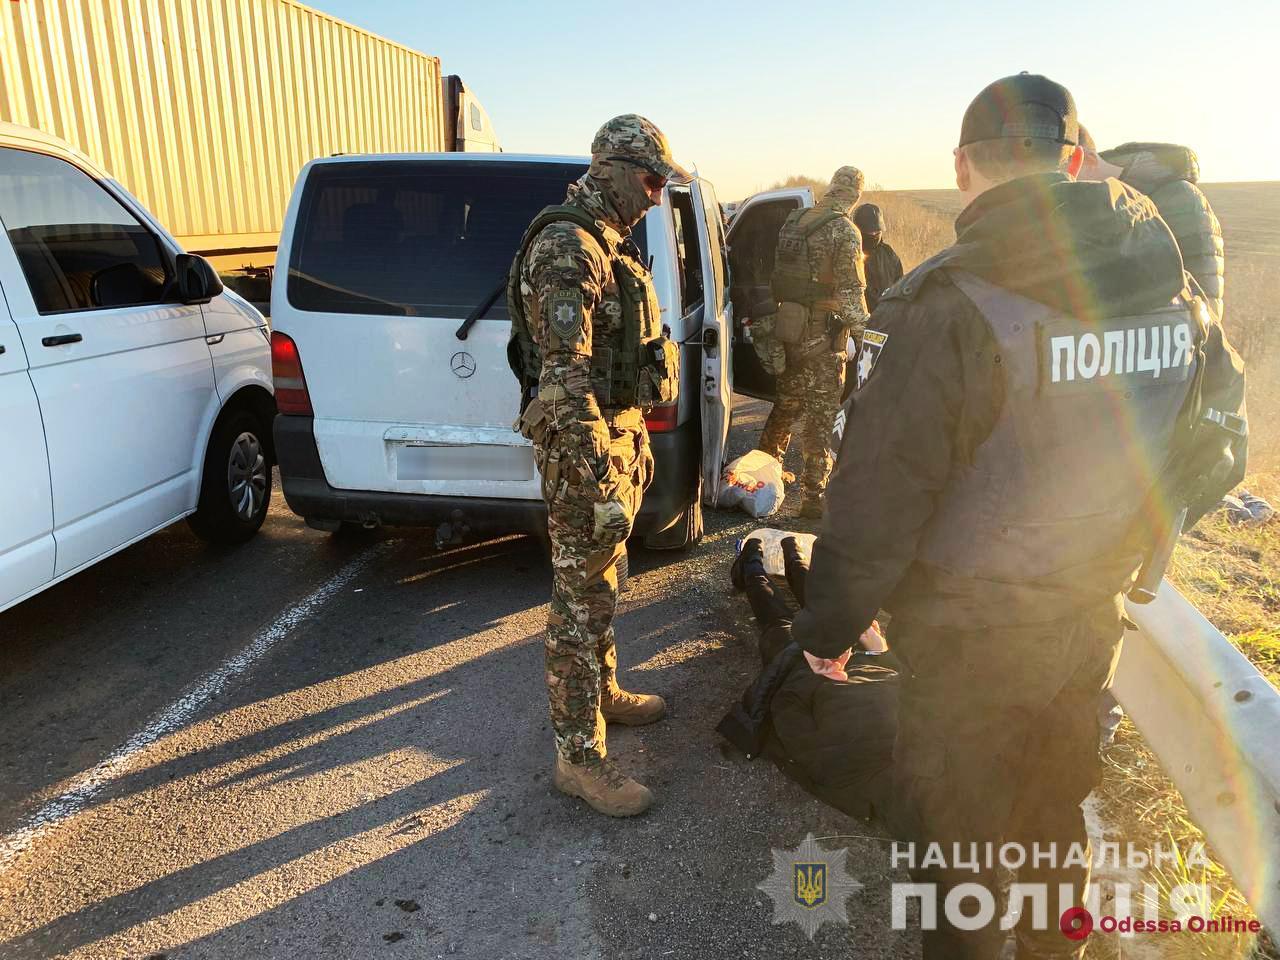 Оружие, снаряжение для взлома и полмиллиона гривен: опасная банда рецидивистов из Одессы обчищала сейфы в соседних областях